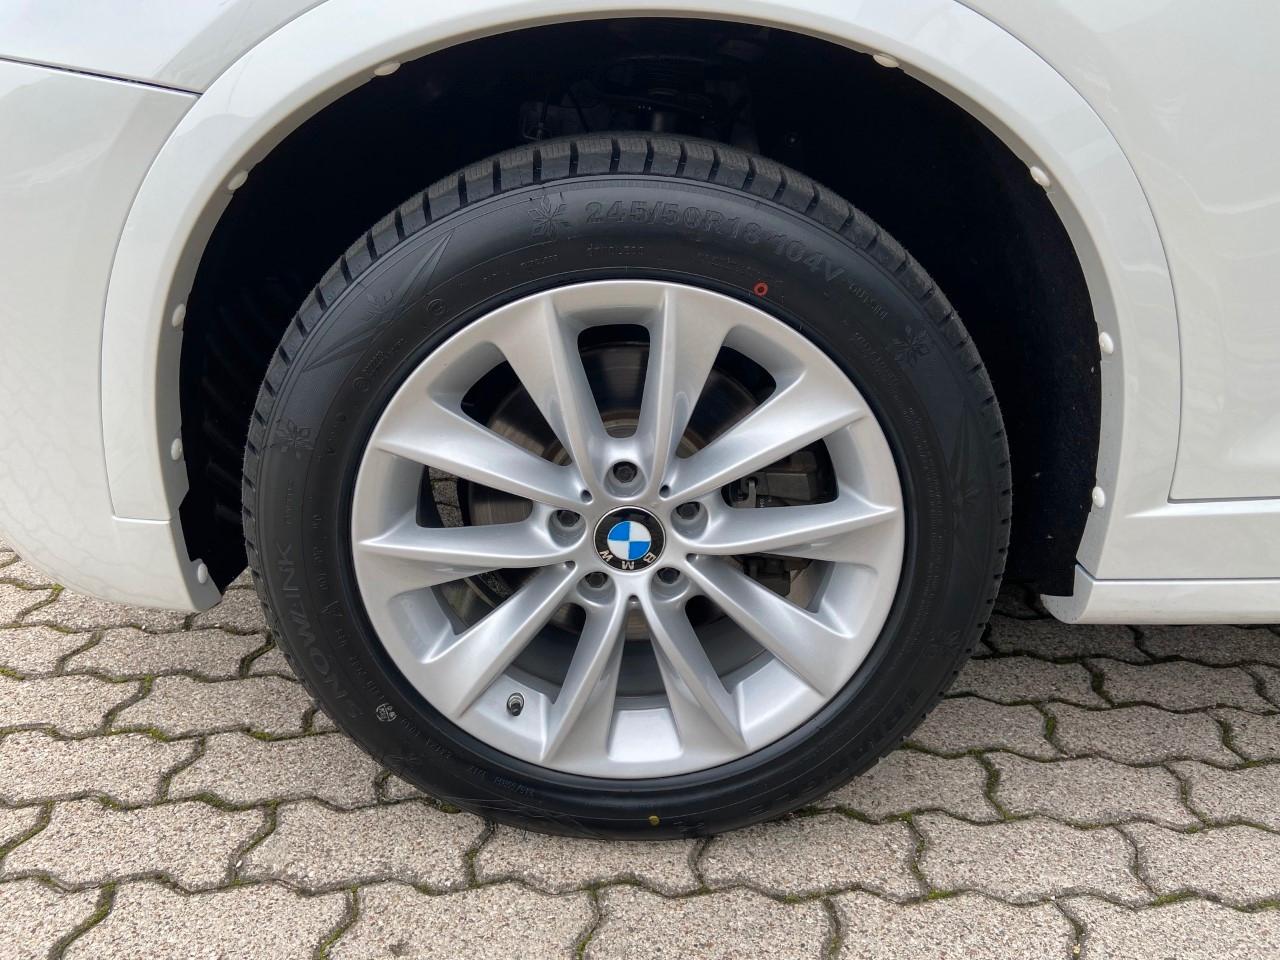 BMW X3 xdrive28iA Msport 2017 - IVA ESPOSTA